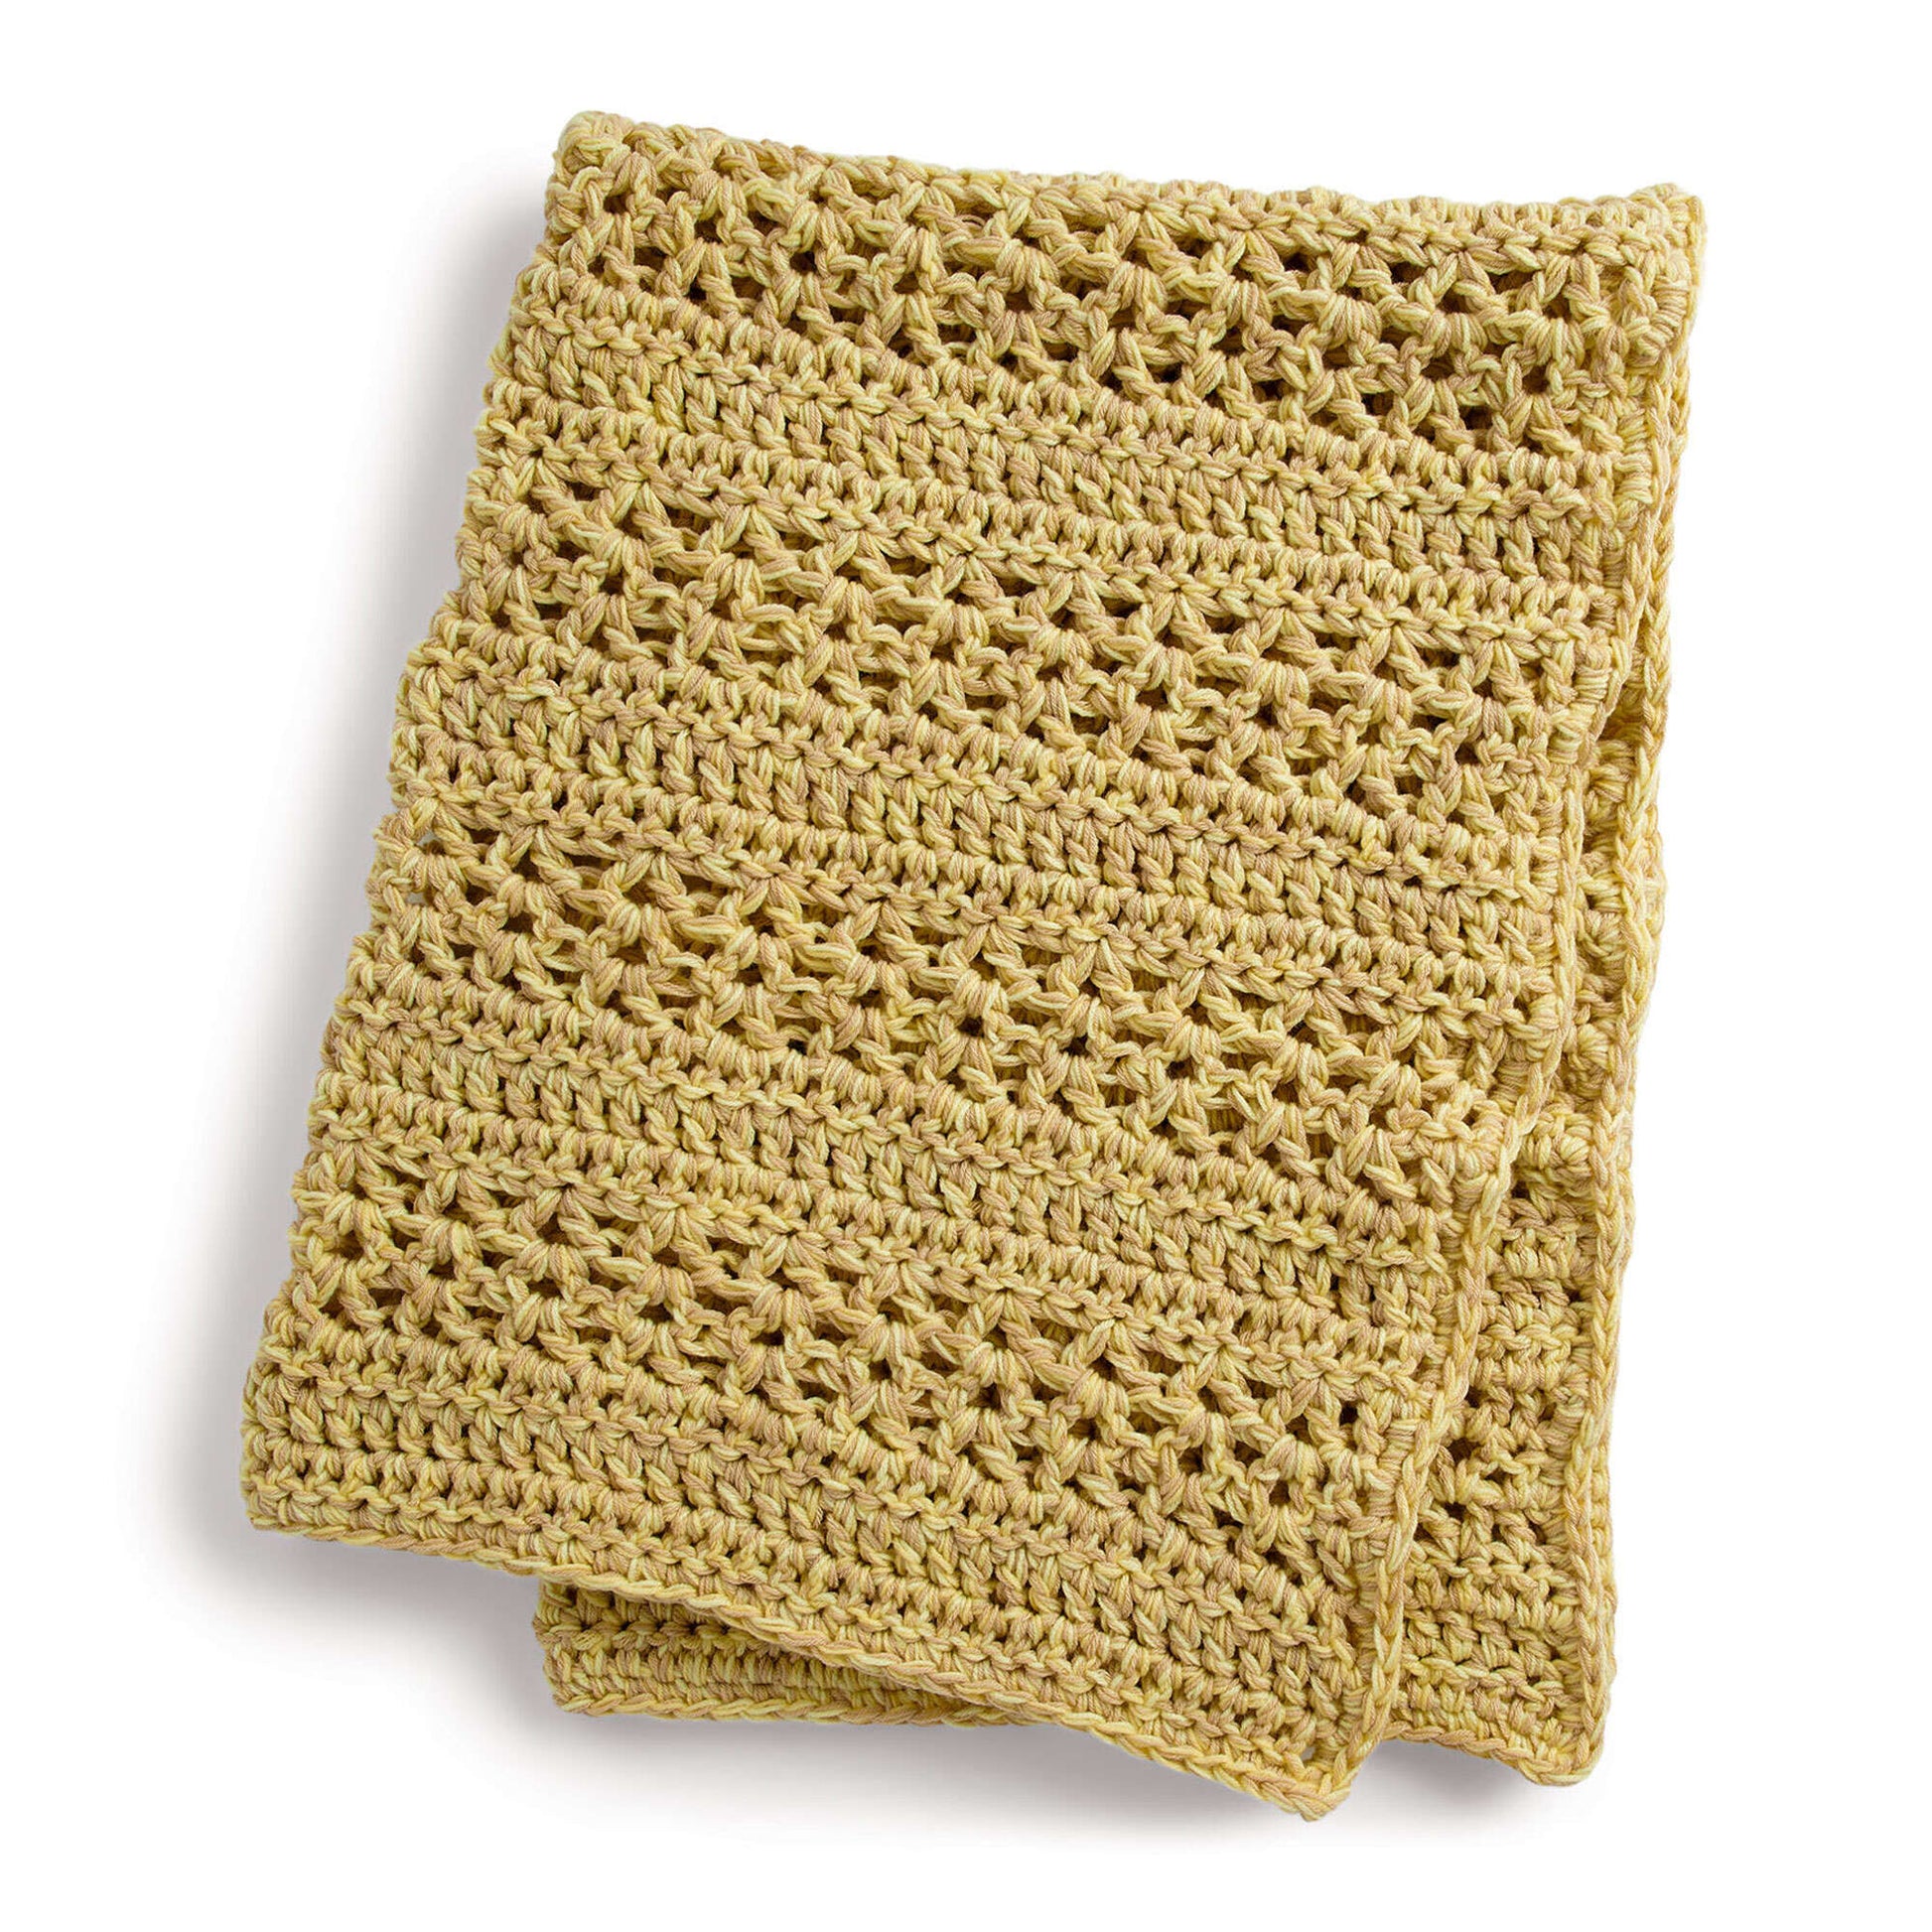 Crochet Kit / DIY Crochet Kit Dishcloth Kit / Simple Crochet